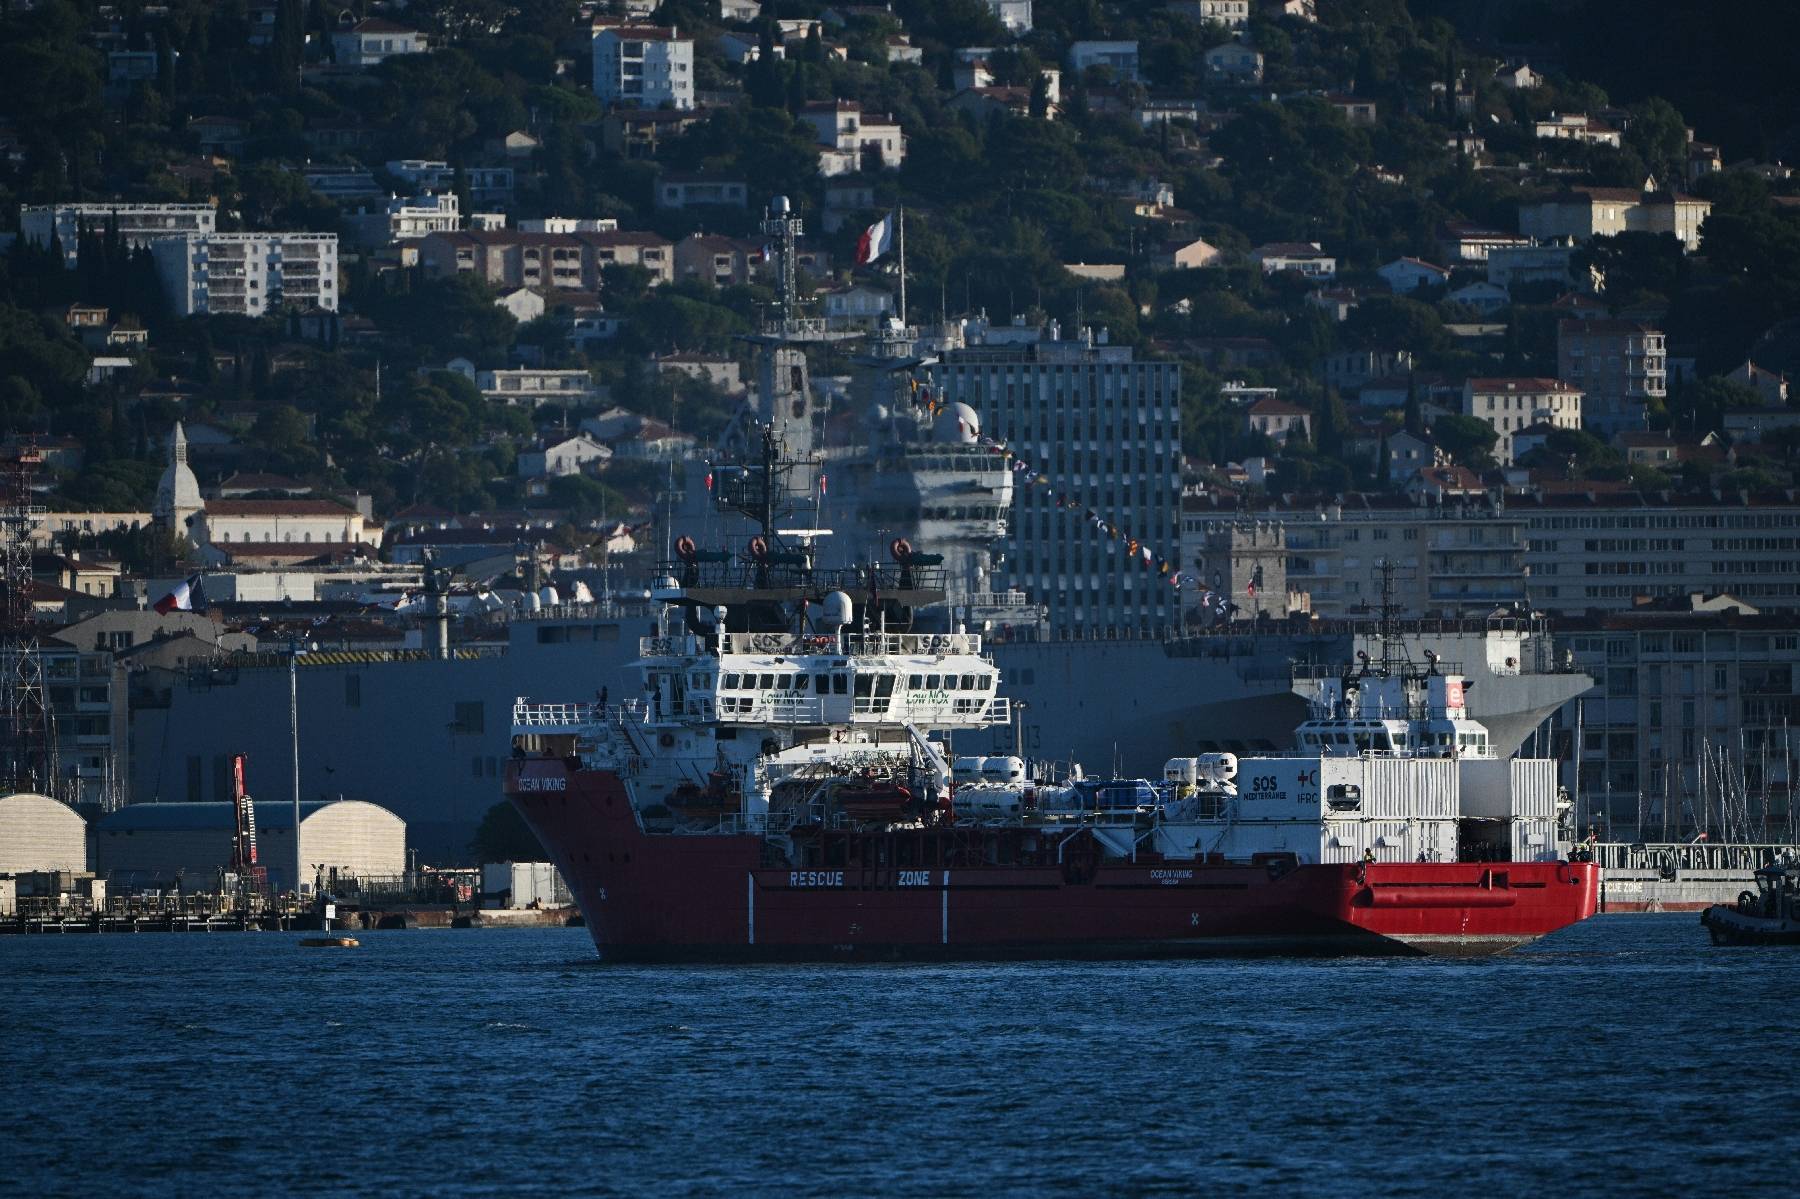 Les subventions de la Ville de Marseille à SOS Méditerranée menacées ?